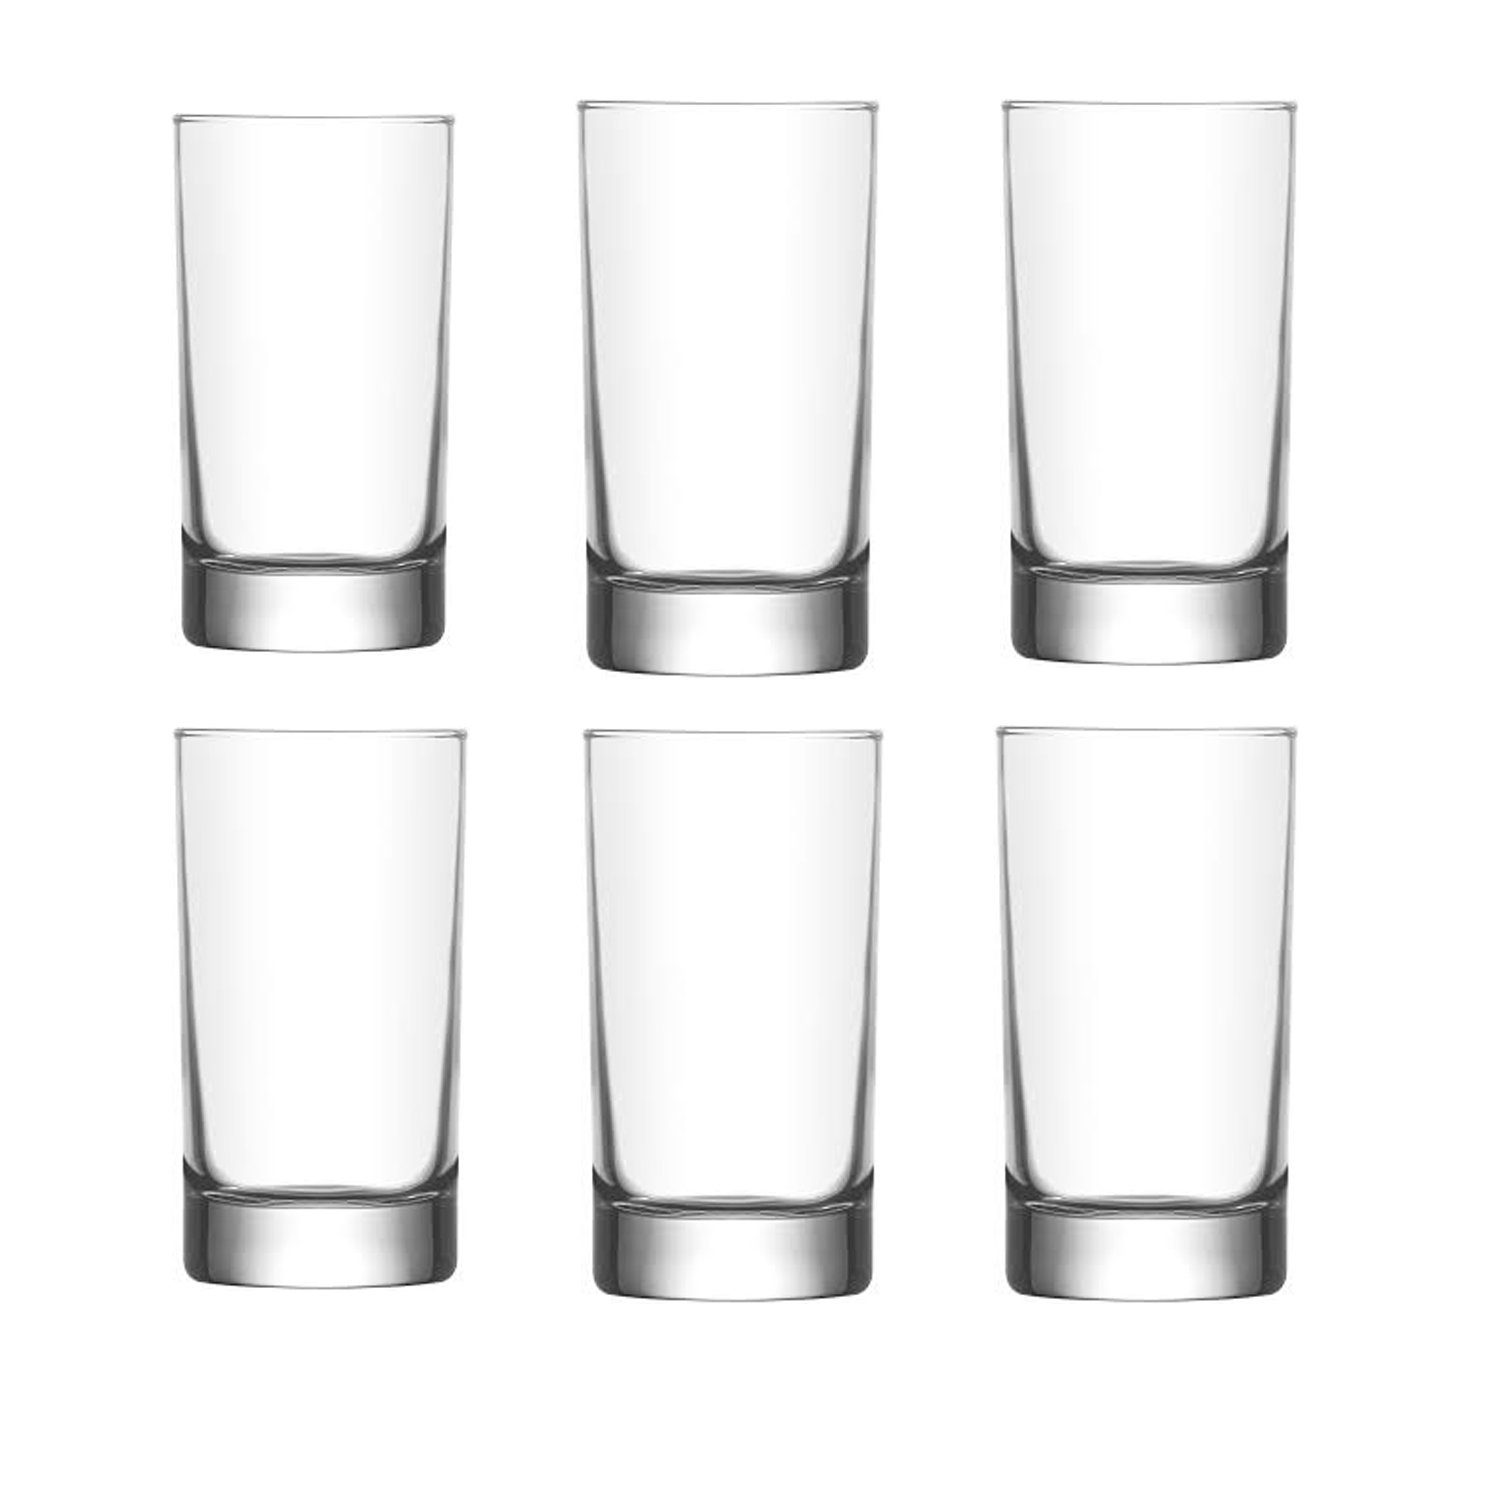 LAV Glas Wassergläser Set 6 teilig Trinkglas Gläser Füllmenge 150 ml Saftgläser, Glas, Spülmaschinenfest | Gläser